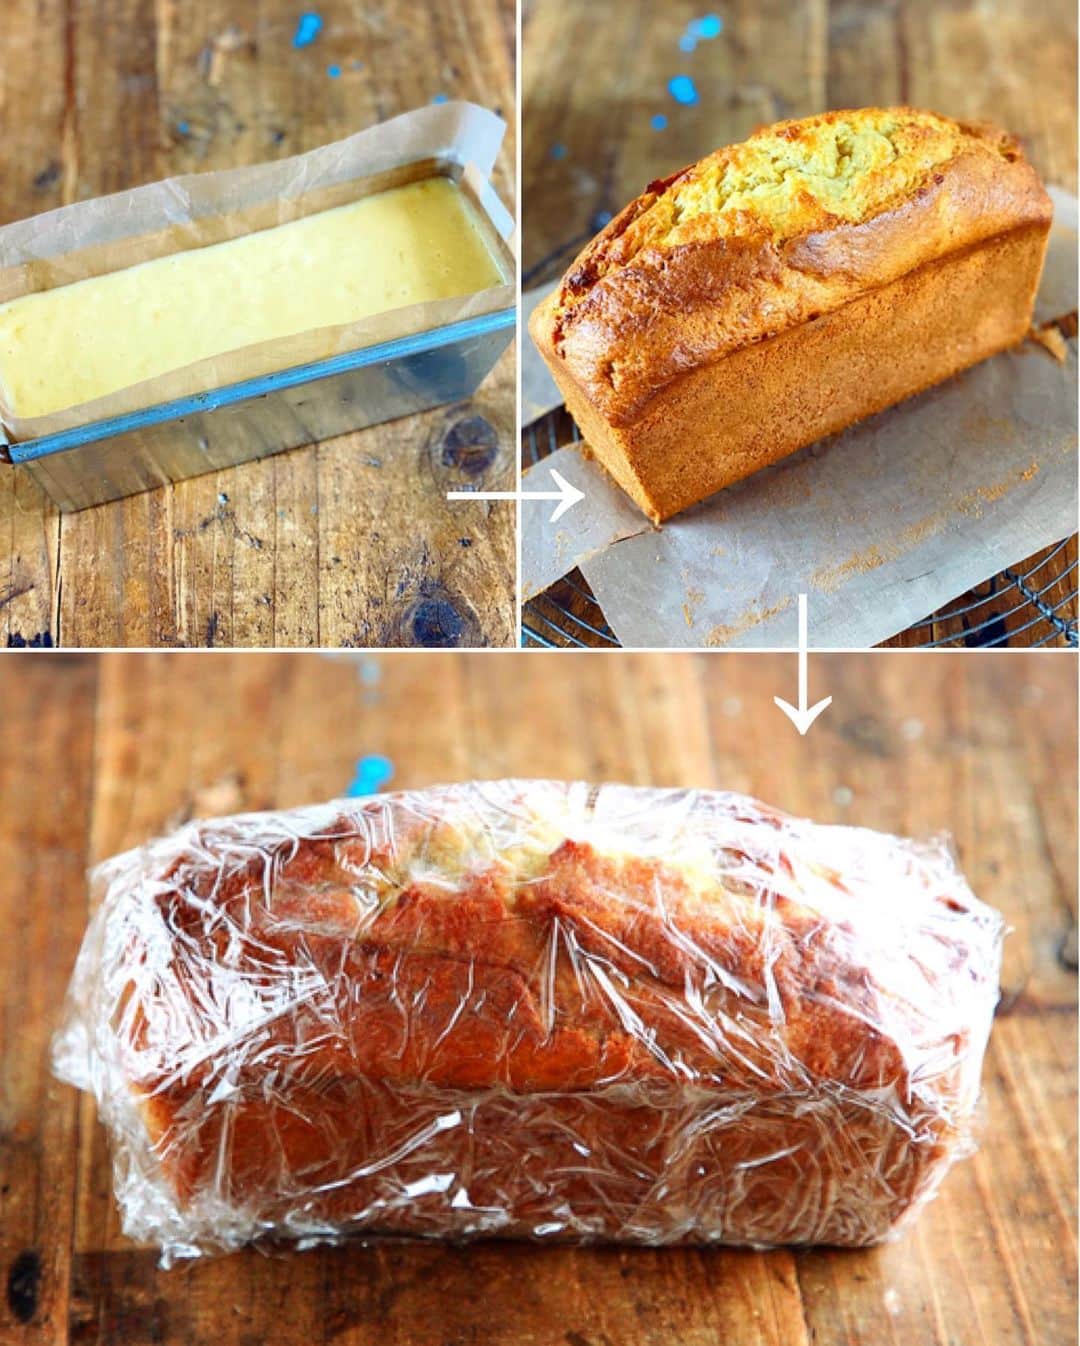 Mizuki【料理ブロガー・簡単レシピ】さんのインスタグラム写真 - (Mizuki【料理ブロガー・簡単レシピ】Instagram)「・﻿ 【レシピ】ーーーーーーーーーーーーーーー﻿ ♡ホケミ&サラダ油で♡﻿ 冷やして美味しいパウンドケーキ(バナナ)﻿ ーーーーーーーーーーーーーーーーーーーー﻿ ﻿ ﻿ ﻿ おはようございます(*^^*)﻿ ﻿ 今日ご紹介させていただくのは﻿ ホットケーキミックスで作る﻿ 冷やして美味しいパウンドケーキ♡﻿ ﻿ 暑くなるこれからの時期﻿ 焼き菓子の保存は冷蔵庫が安心！﻿ ただ、冷やすとパサついたり﻿ かたくなるのが嫌だな〜っと思い﻿ 冷やしても美味しい配合を考えました♩﻿ ﻿ 通常よりお砂糖は少し多めに、﻿ バナナもたっぷり混ぜ込みます♡﻿ そして、バターではなく﻿ オイルで作るのもポイントです♩﻿ ﻿ と〜っても簡単にできるので﻿ よかったらお試し下さいね(*´艸`)﻿ ﻿ ﻿ ﻿ ーーーーーーーーーーーーーーーーーーーー﻿ 【18cmパウンド型】﻿ バナナ...小2本(皮付き200g)﻿ 卵...2個﻿ 砂糖...大3﻿ サラダ油...60g﻿ (あれば)シナモンかラム酒...適量﻿ ホットケーキミックス...150g﻿ ﻿ (準備)型にシートを敷く。オーブンを180度に予熱する。﻿ 1.ボウルにバナナを入れ、フォークでペースト状に潰す。卵、砂糖、サラダ油、(あれば)シナモン少々orラム酒小2〜を加えてよく混ぜ、最後にホットケーキミックスも加えて混ぜる。﻿ 2.型に注ぎ、予熱したオーブンで35〜40分焼く。焼けたらアミにのせて冷まし、ラップで包んで冷蔵庫で冷やす。﻿ ーーーーーーーーーーーーーーーーーーーー﻿ ﻿ ﻿ ﻿ 《ポイント》﻿ ♦︎シナモンやラム酒はなくても大丈夫ですがあれば香りがよくなります♩﻿ ♦︎サラダ油の代わりに太白ごま油を使用しても♩﻿ ♦︎冷蔵庫保存で2〜3日を目処に食べ切って下さい♩﻿ ﻿ ﻿ ﻿ ﻿ ﻿ ﻿ ＿＿＿＿＿＿＿＿＿＿＿＿＿＿＿＿＿﻿ 【💎インスタライブのお知らせ💎】﻿ 14日(日曜日)の14時頃から﻿ インスタライブを行います✨﻿ 詳細はまたお知らせさせて下さいね♩﻿ ￣￣￣￣￣￣￣￣￣￣￣￣￣￣￣￣￣﻿ ﻿ ﻿ ﻿ ﻿ ﻿ ﻿ 🔻入荷しました🔻﻿ ストーリーにリンク貼っています🙇‍♀️﻿ ＿＿＿＿＿＿＿＿＿＿＿＿＿＿＿＿＿＿＿﻿ 📕\ \ 新刊発売中 / /📕﻿ 簡単・時短！ 毎日のごはんがラクになる﻿ ✨🦋 【 #Mizukiの今どき和食 】🦋✨﻿ ＿＿＿＿＿＿＿＿＿＿＿＿＿＿＿＿＿＿＿﻿ ﻿ なるべく少ない材料で﻿ 手間も時間も省きながら﻿ 簡単にできるおいしい和食レシピ♩﻿ 簡単に失敗なくマスターできる一冊で﻿ もっと気軽に、カジュアルに﻿ 和食を楽しんで下さいね(*^^*)﻿ ﻿ ﻿ ーーー ⭐️PART.1 メインおかず ⭐️ーーー﻿ 素材別にレシピをご紹介しています♩﻿ 和食の定番から新定番まで﻿ どれも押さえておきたいメニューばかり。﻿ 肉じゃがはフライパンで！焼き豚はレンジで！﻿ ぶり大根は切り身を使って手軽に作ります♩﻿ ﻿ ーーー ☘️PART.2 サブおかず ☘️ーーー﻿ 年中手に入るお手頃野菜と﻿ 乾物や大豆、こんにゃくなどを使った﻿ 副菜レシピをたっぷり掲載！！﻿ 普段SNSではメインおかずばかりなので﻿ 本では副菜にも力を入れています(*^^*)﻿ ﻿ ーーー 🌸PART.3 ごはんと汁物 🌸ーーー﻿ ささっと作れる丼と麺、﻿ みんなで食べたいいなり寿司や﻿ 手巻きごはんもご紹介！﻿ 複数の炊き込みごはんと﻿ 味噌汁&和風スープも盛りだくさん！﻿ ﻿ ﻿ 各レシピのポイントは﻿ 【写真付きで丁寧に解説】﻿ 副菜レシピもたっぷりなので﻿ 【メインページに副菜メモもつけました】﻿ ＊このメインにはこの副菜が合いますよ〜﻿ という献立の提案です(*^^*)﻿ 【その他コラムも充実】﻿ 全127品中ほぼ全て﻿ 【本だけのレシピです！】﻿ ＿＿＿＿＿＿＿＿＿＿＿＿＿＿＿＿＿＿＿﻿ ﻿ ﻿ ﻿ ﻿ ﻿ ＿＿＿＿＿＿＿＿＿＿＿＿＿＿＿＿＿﻿ 🎀発売中🎀﻿ 【#ホットケーキミックスのお菓子 】﻿ ﻿ 一冊まるっとホケミスイーツ♩﻿ 普段のおやつから﻿ 特別な日にも使えるレシピを﻿ この一冊に詰め込みました(*^^*)﻿ ホットケーキミックスを使えば﻿ 簡単に本格的なお菓子が作れますよ♡﻿ ＿＿＿＿＿＿＿＿＿＿＿＿＿＿＿＿＿﻿ ﻿ ⭐️ストーリー、ハイライト、プロフ画面に﻿ 本のURLを貼らせていただいております♩﻿ →(@mizuki_31cafe )﻿ ﻿ ﻿ ﻿ ﻿ #ホットケーキミックス#パウンドケーキ#バナナケーキ#うちで過ごそう#おうち時間#Mizuki#簡単レシピ#時短レシピ#節約レシピ#料理#レシピ#フーディーテーブル#マカロニメイト#おうちごはん#デリスタグラマー#料理好きな人と繋がりたい#おうちごはん#lover#foodpic#follow#cooking#recipe#lin_stagrammer#stayhome#冷やして美味しいパウンドケーキm」6月10日 7時03分 - mizuki_31cafe